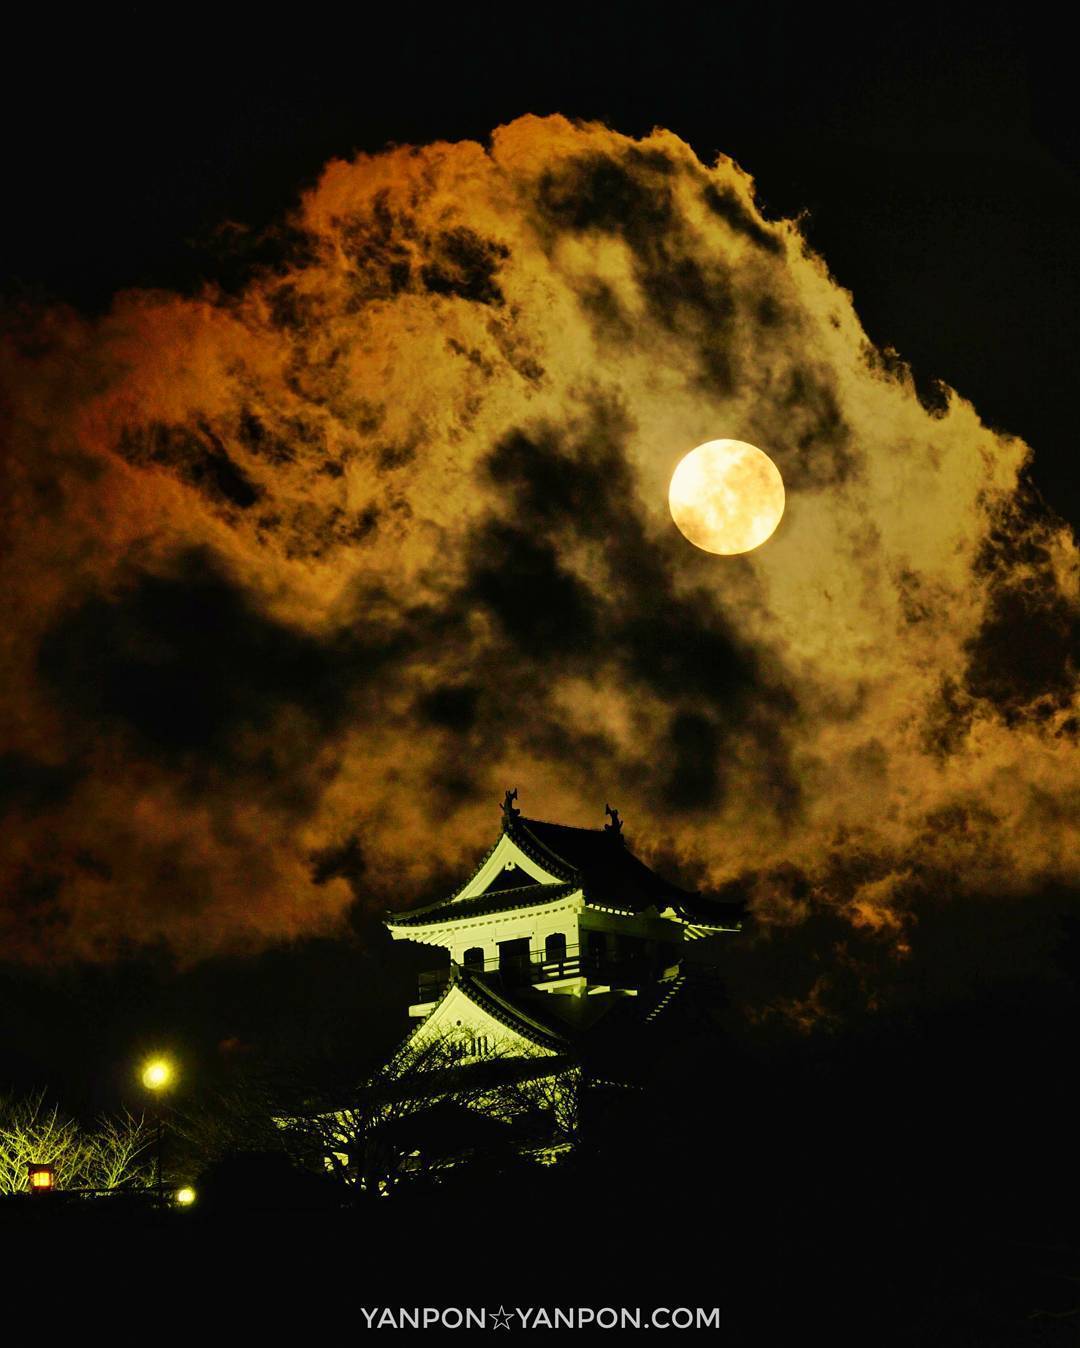 館山市 館山城 満月を雲が覆う まるで大河ドラマのポスターかっ 不気味な静けさだった 房総 絶景 千葉 館山 館山城 満月 Moonlight Boso Http Ift Tt 2ivlevx